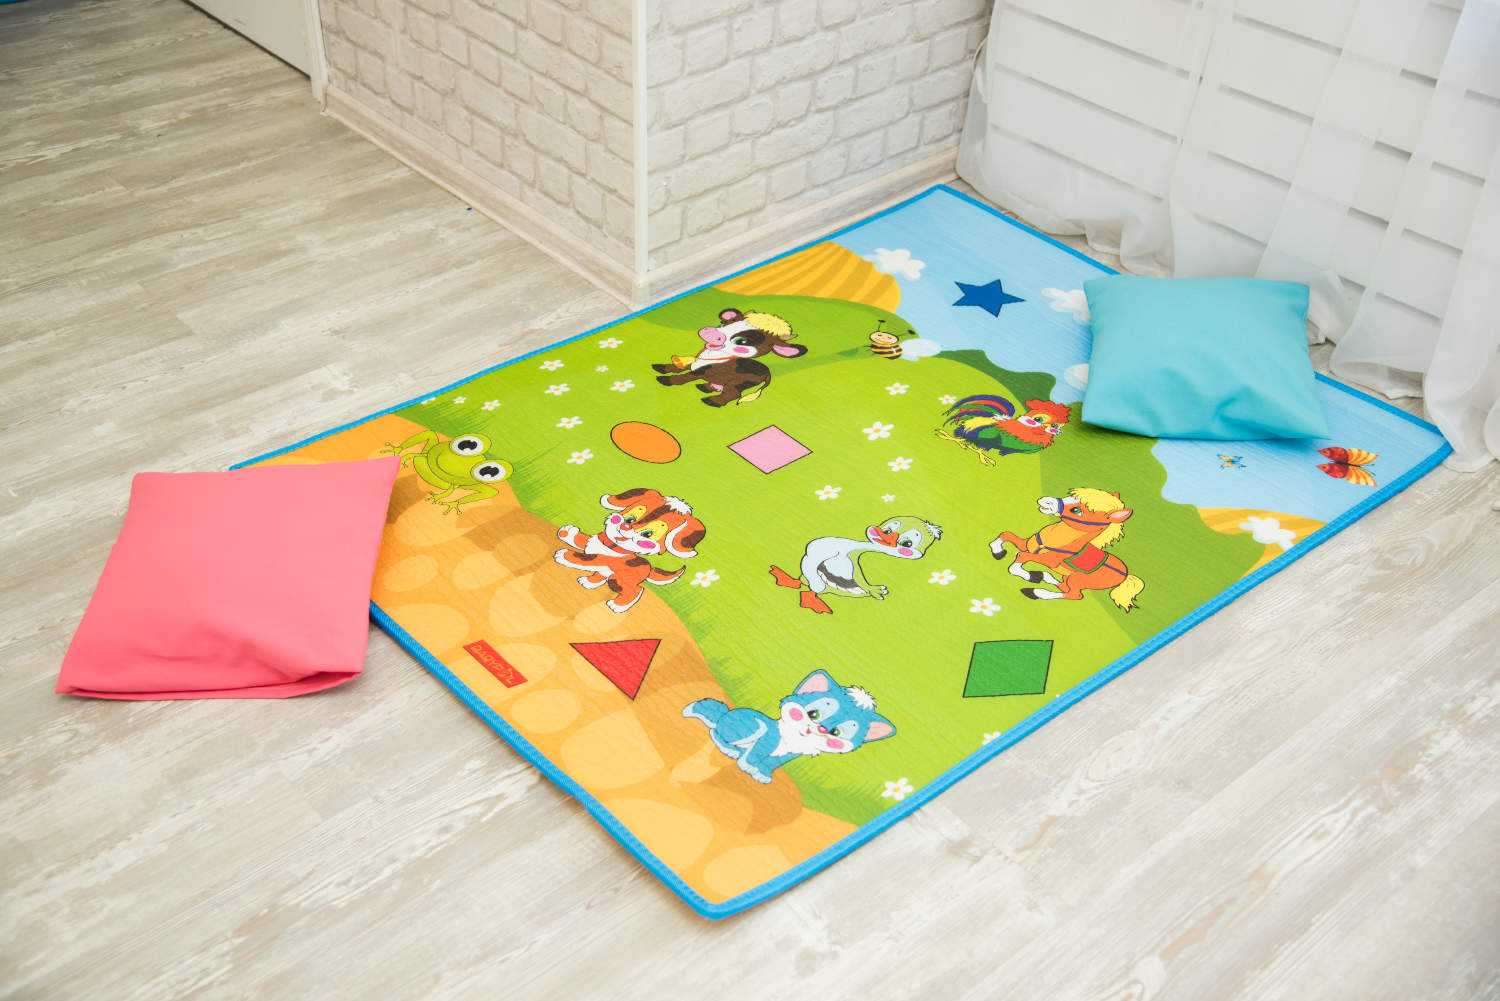 Варианты выбора стиля и дизайна ковров для детской комнаты